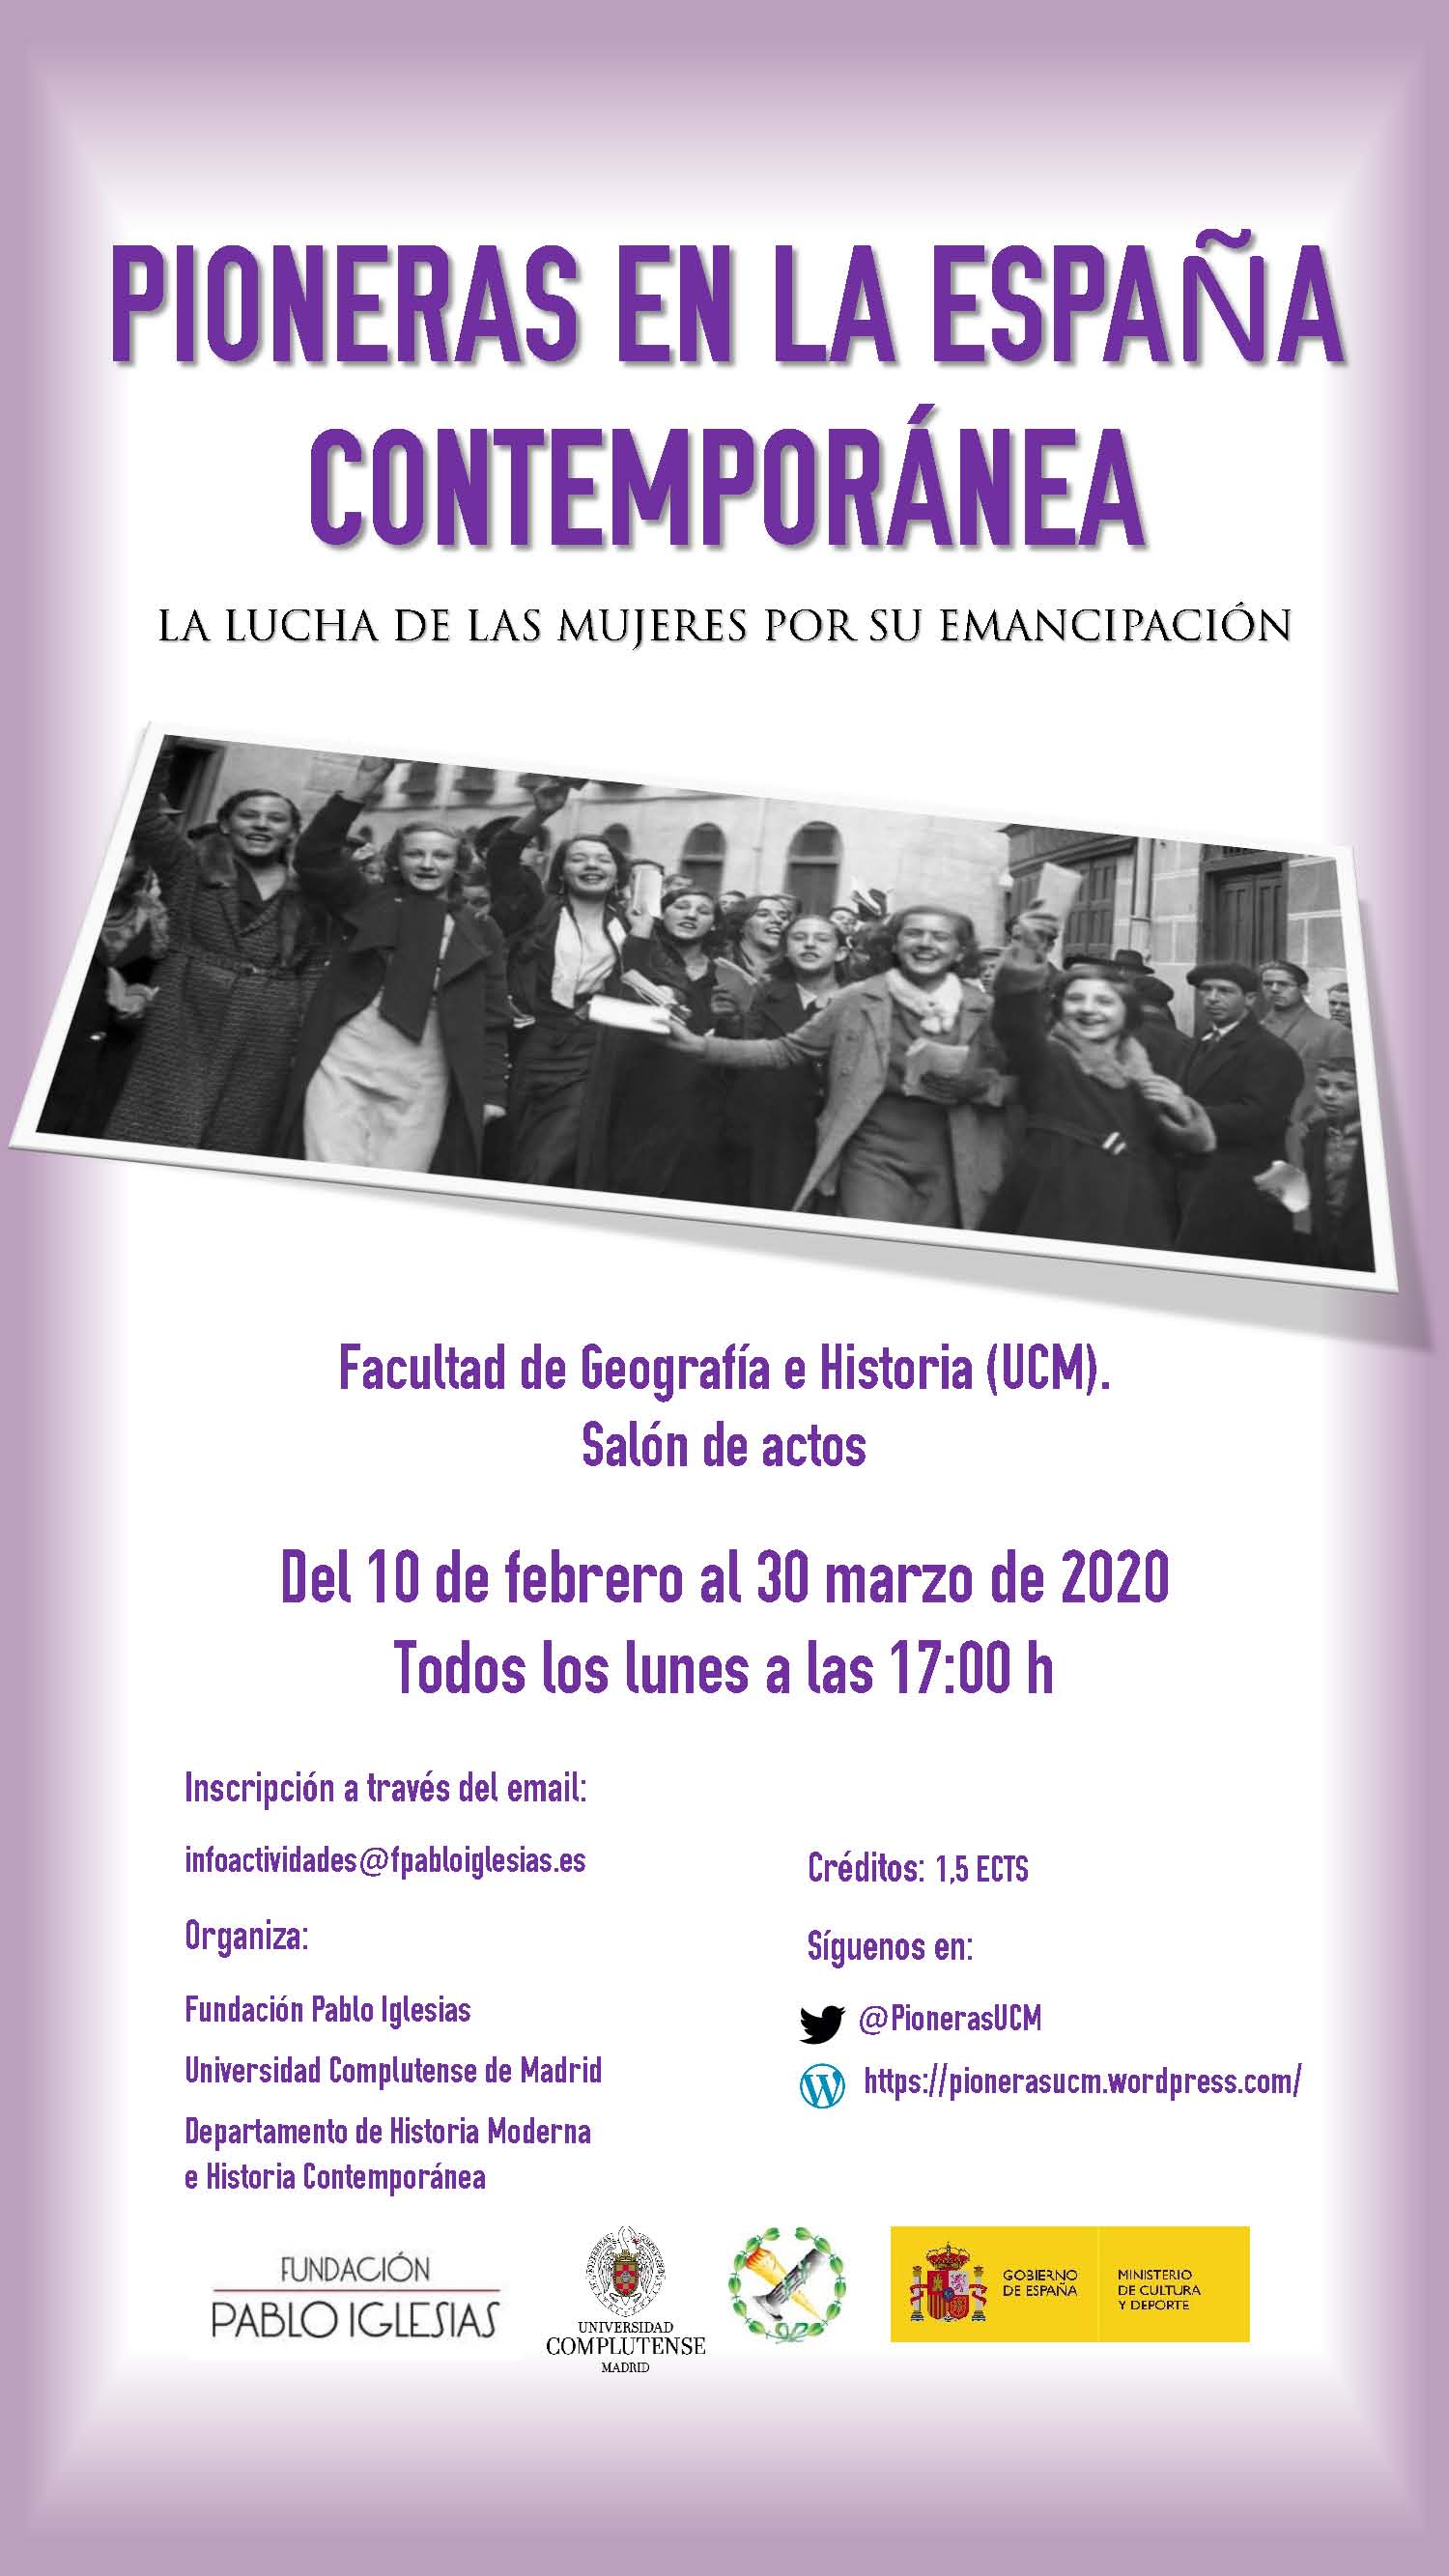 Pioneras en la España Contemporánea. Todos los lunes en la facultad desde el 10 de febrero hasta el 30 de marzo a las 17 horas.